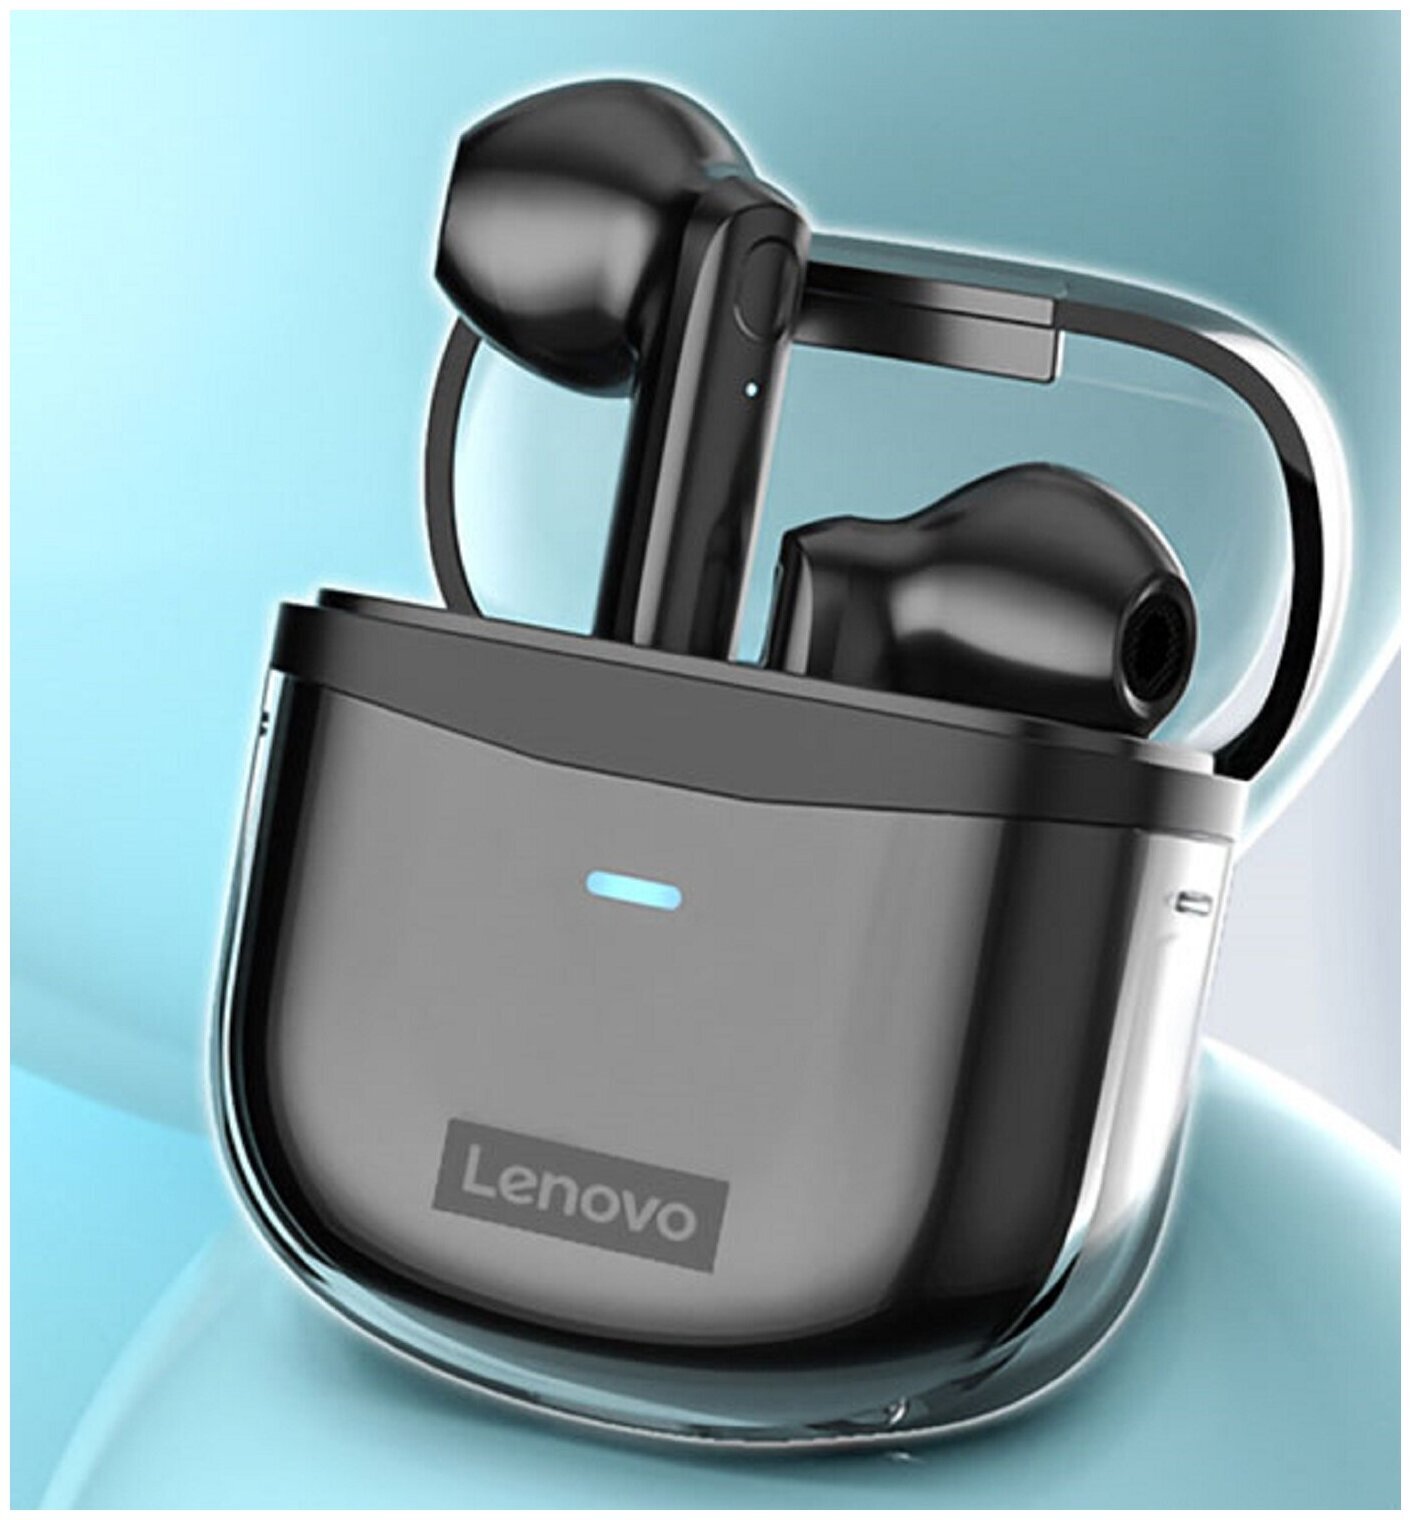 Беспроводные TWS наушники Lenovo XT96 True Wireless Earbuds